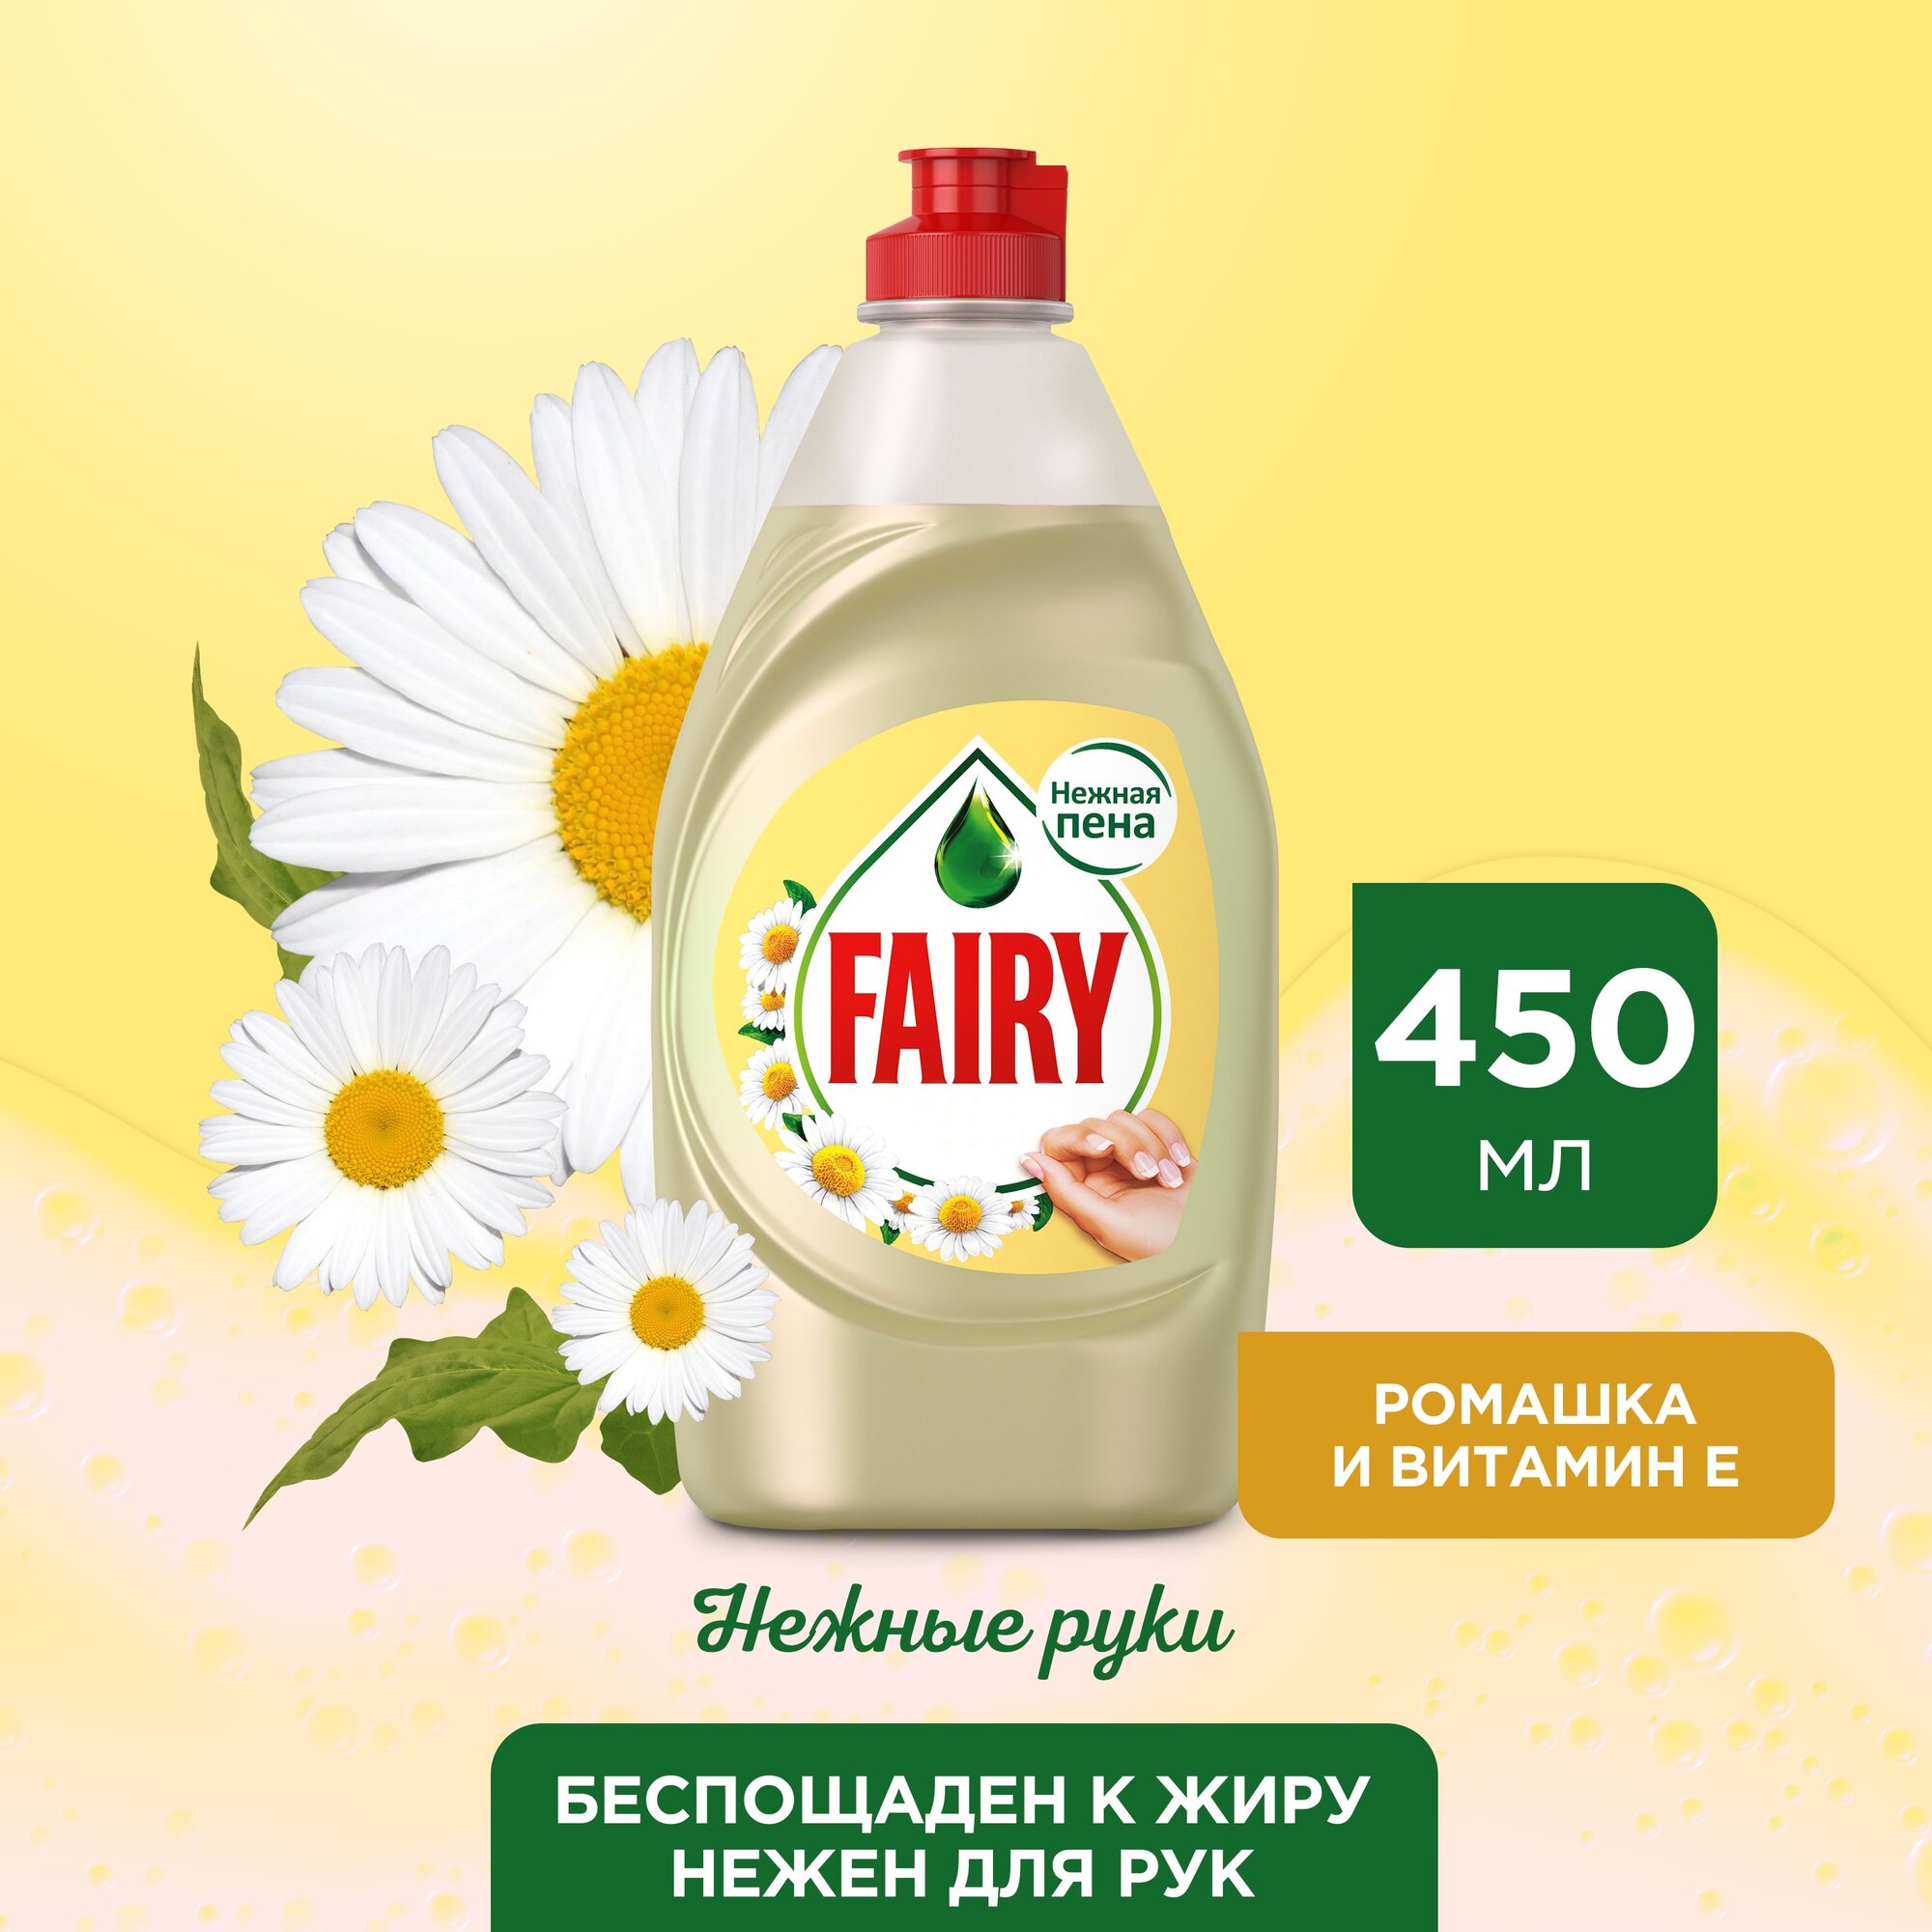 Fairy           E, 450 